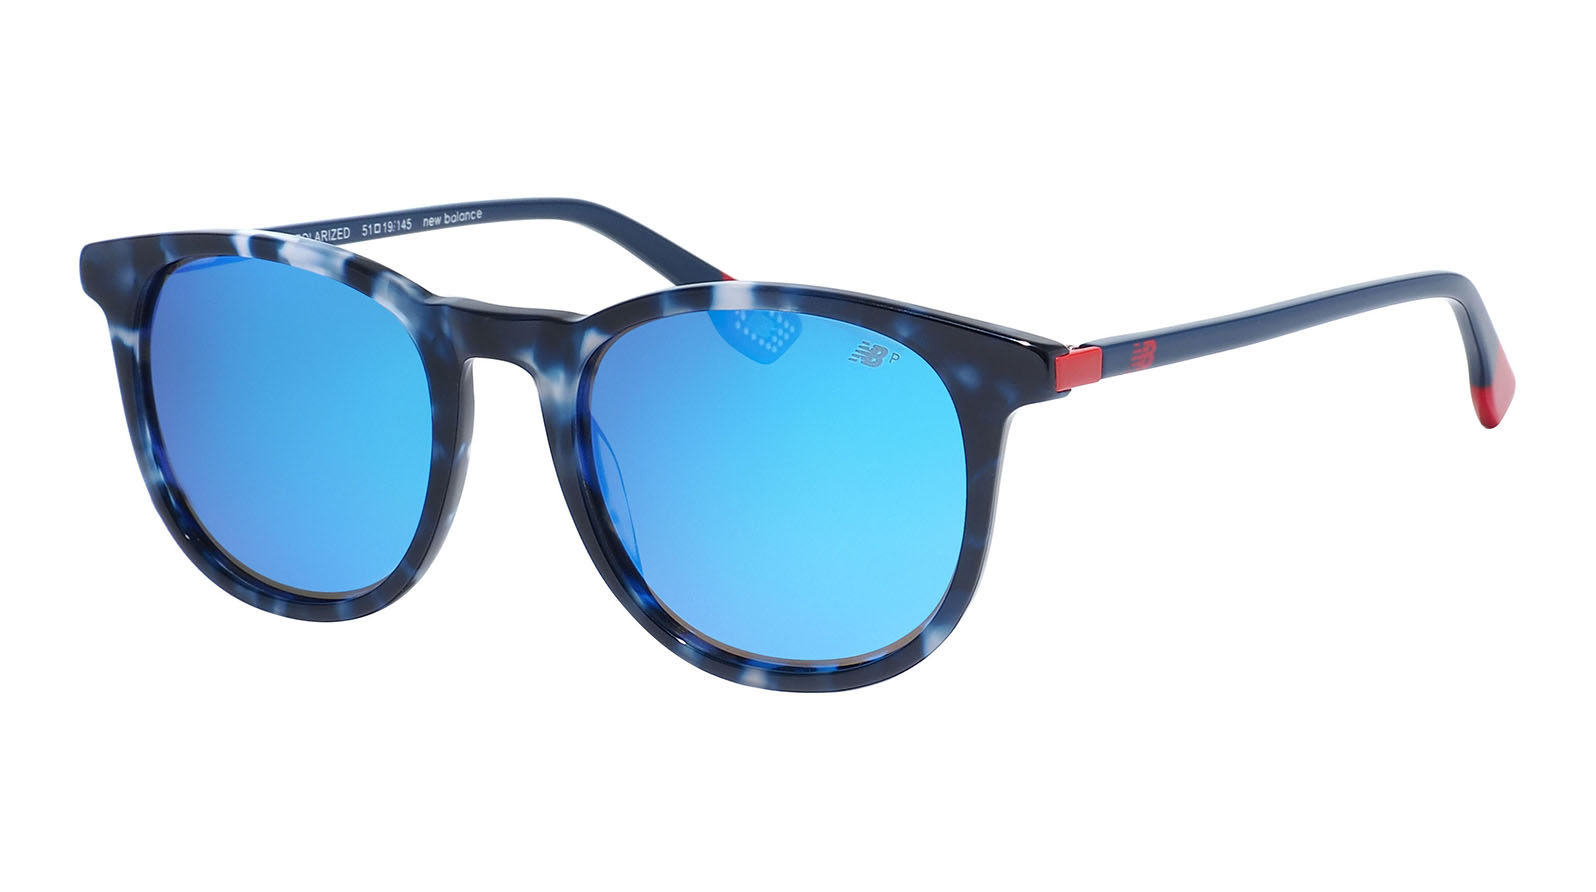 New Balance 6070 1 playtoday солнцезащитные очки с поляризацией researcher с фильтром cat2